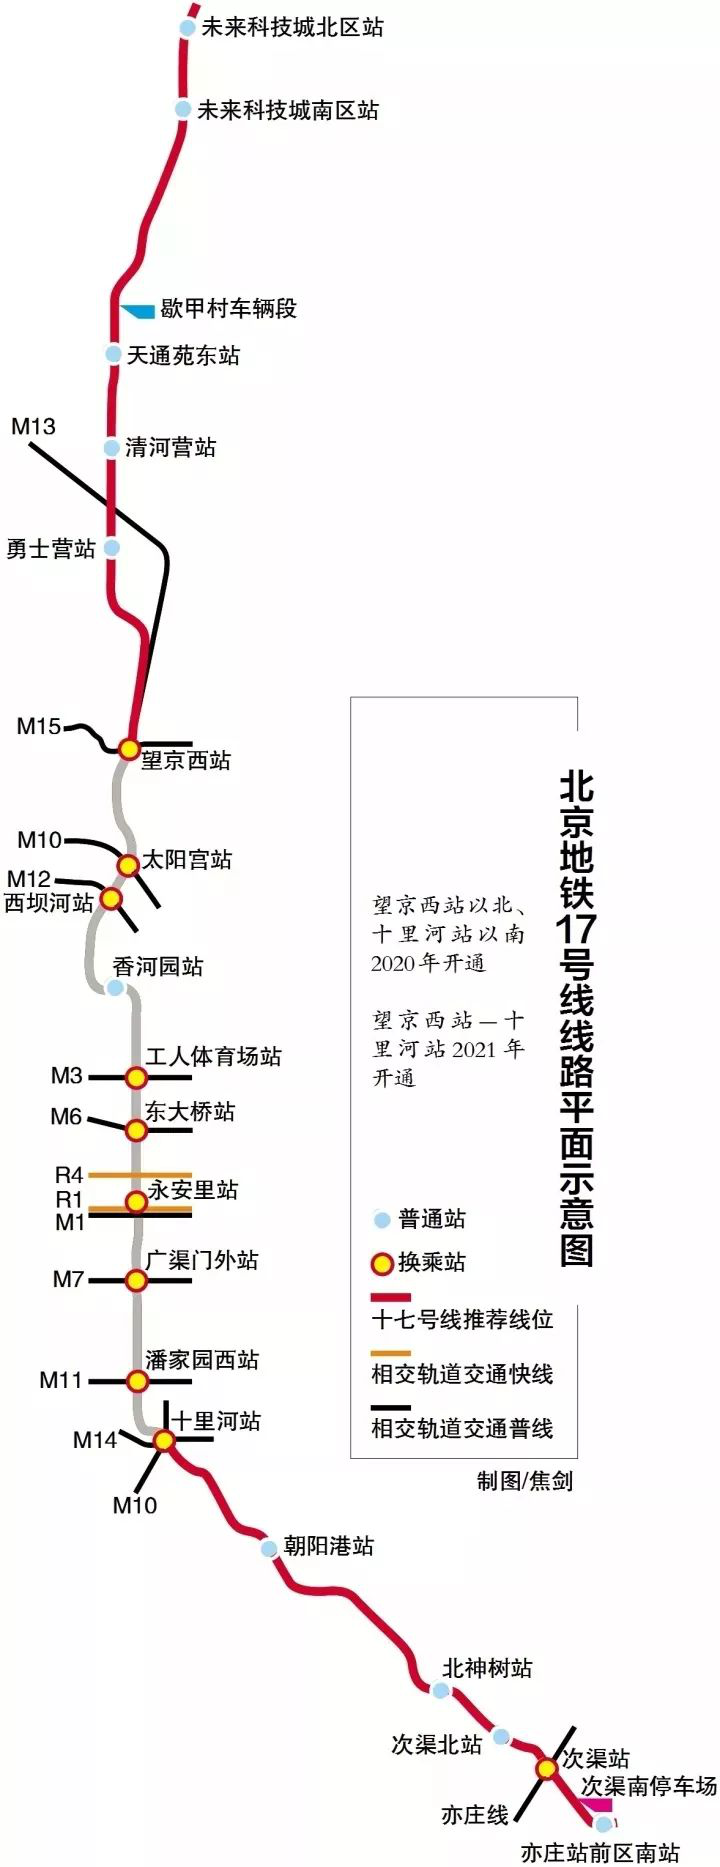 北京地铁17号线是一条正在全新建设的线路,全长达到了50公里, 北起